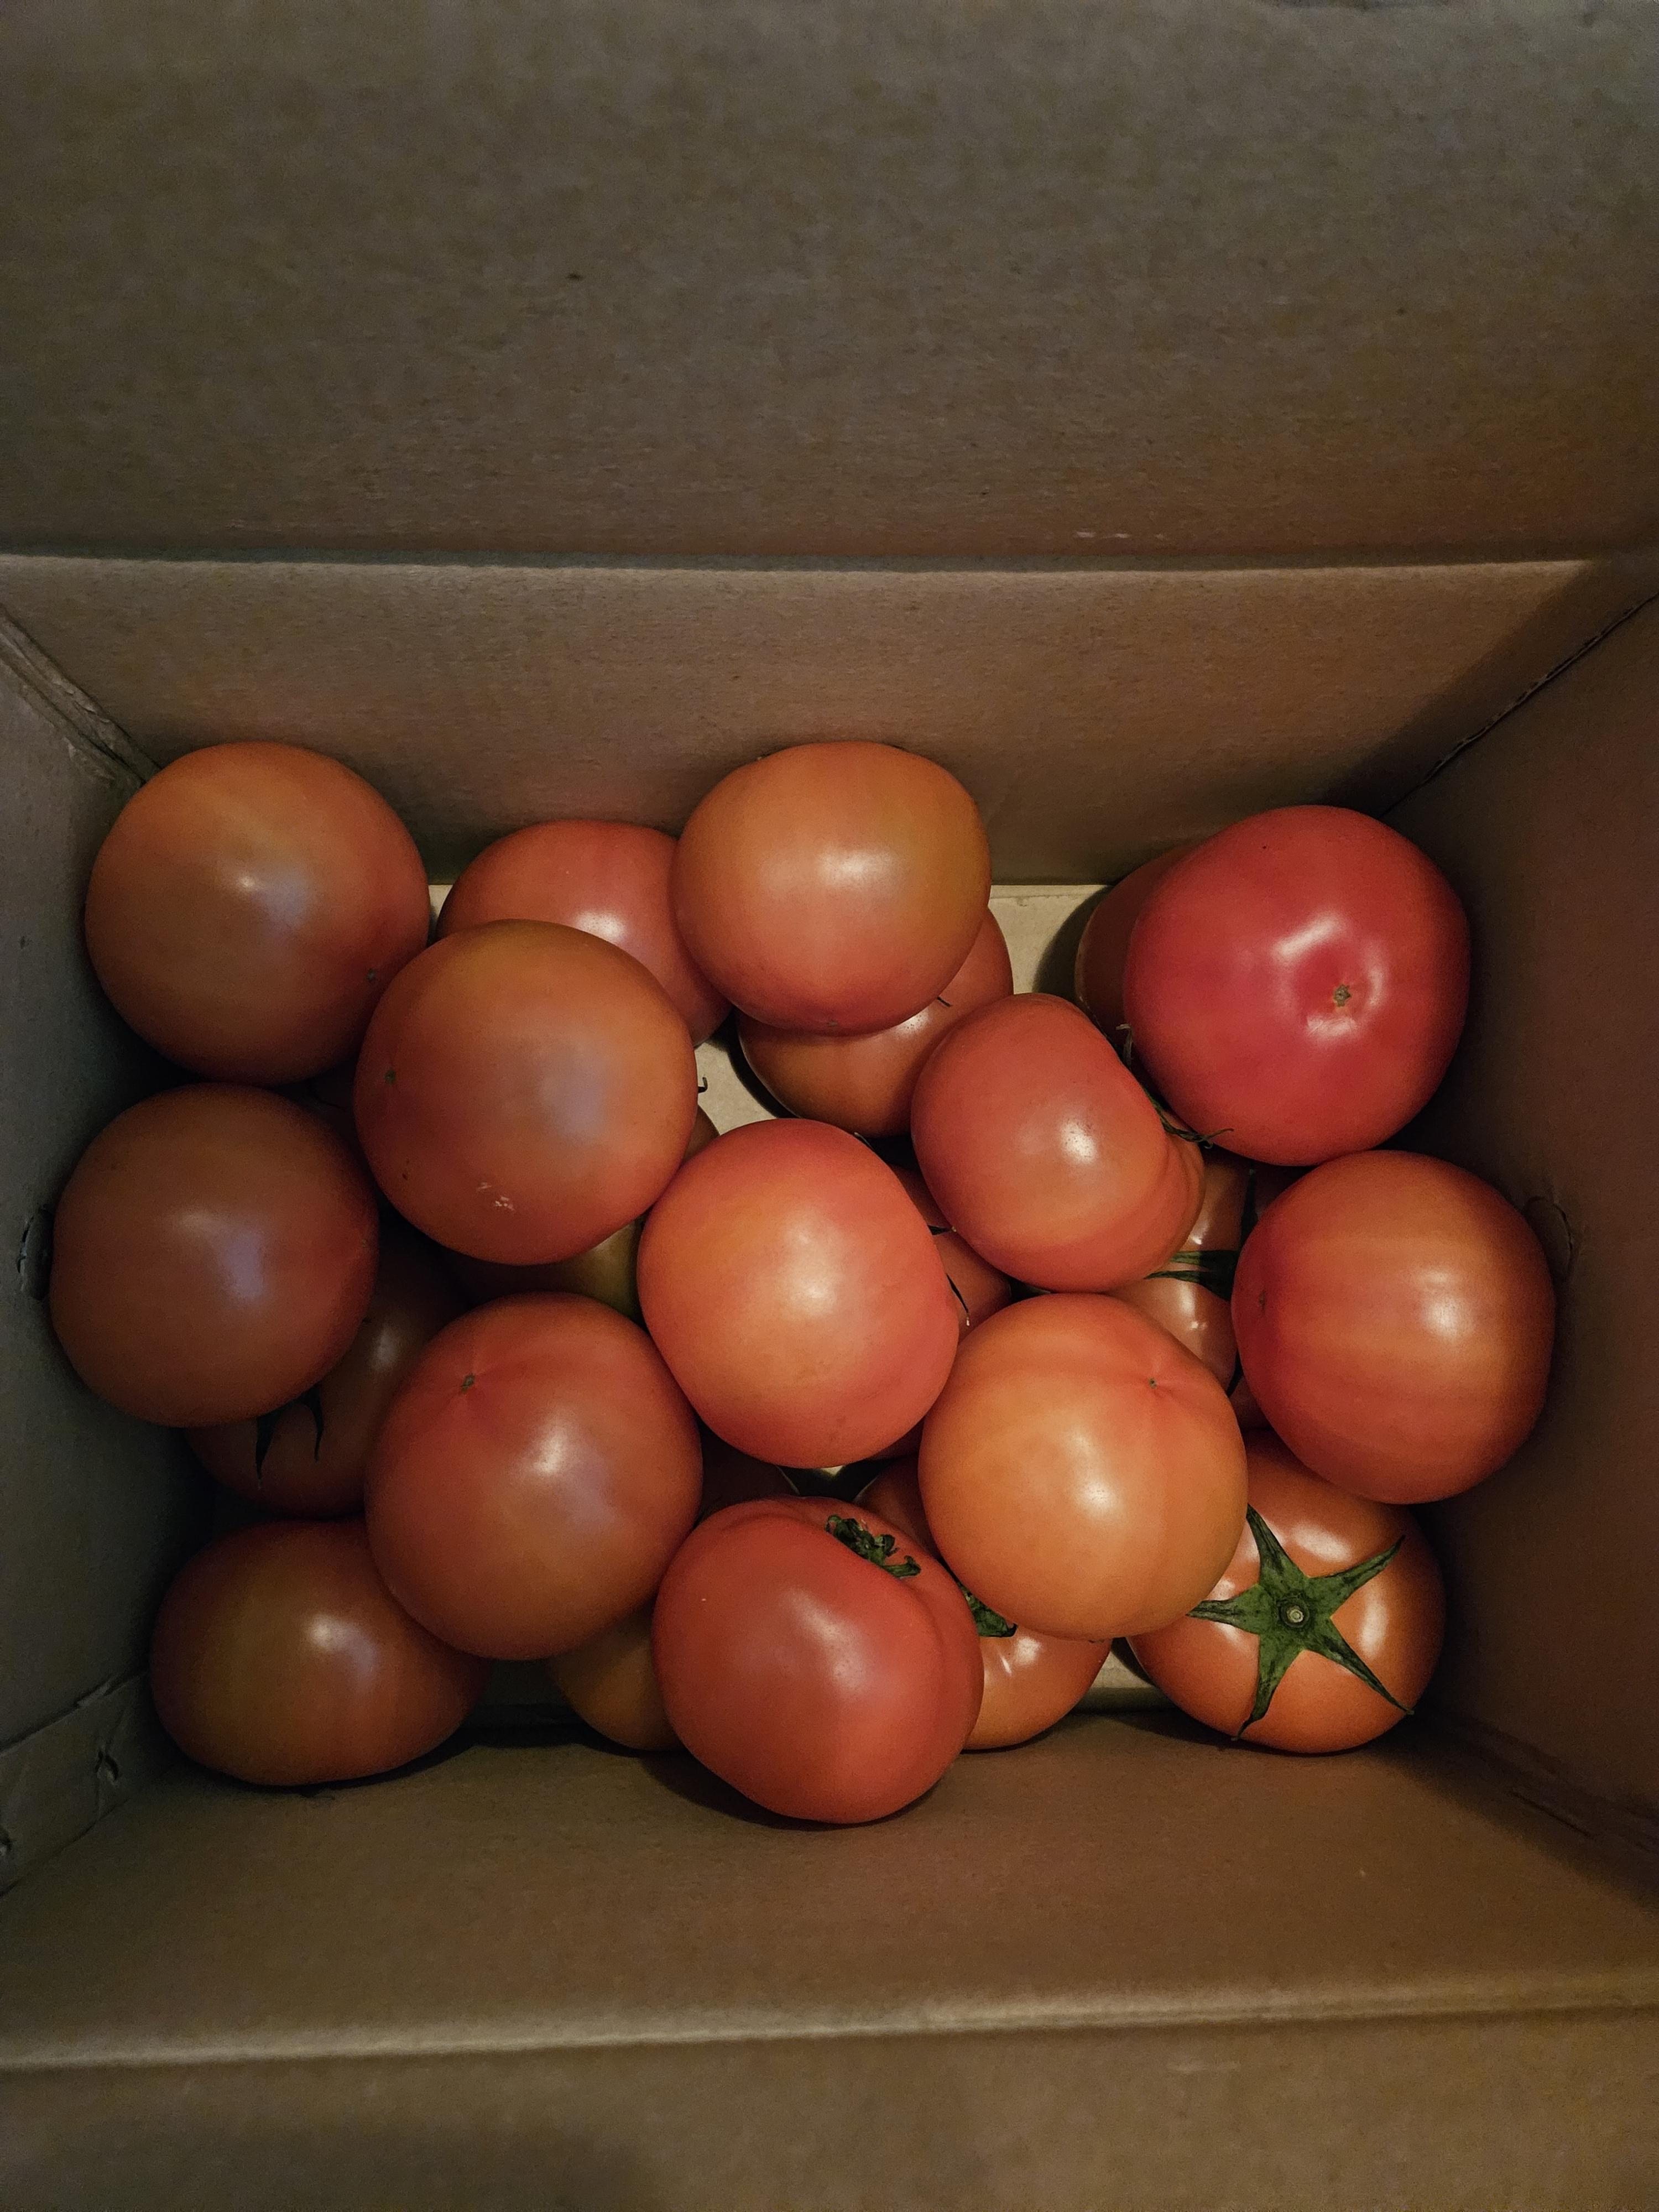 [정보화마을] 벌교부농정보화마을 완숙토마토 5kg